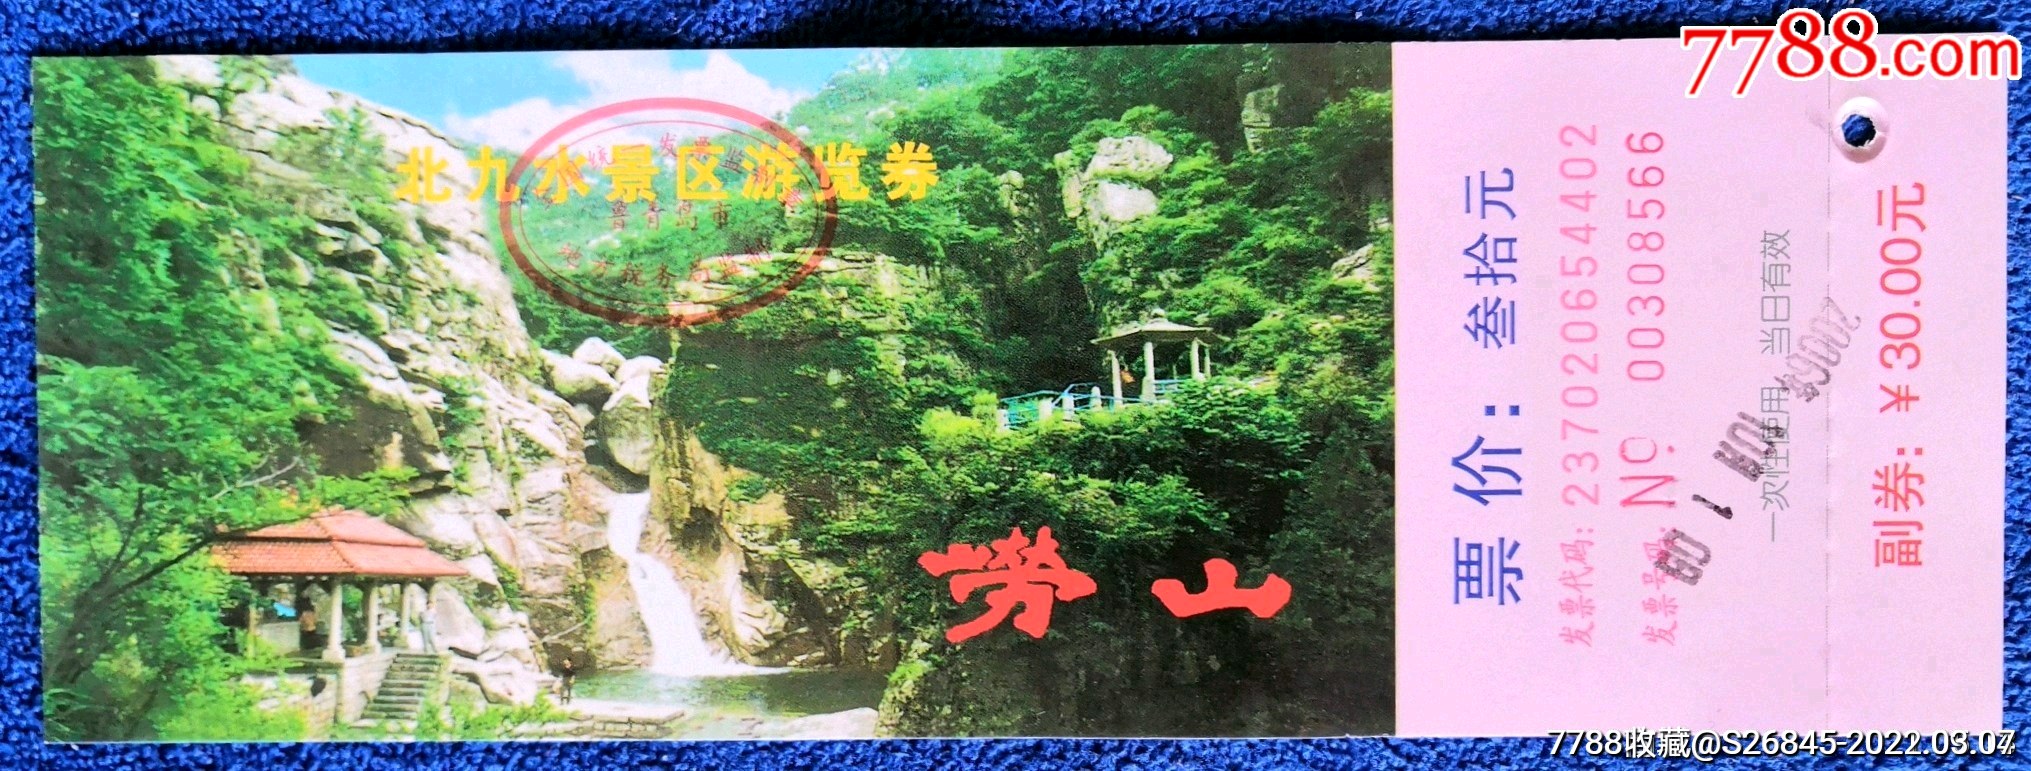 青岛旅游必去景点门票图片